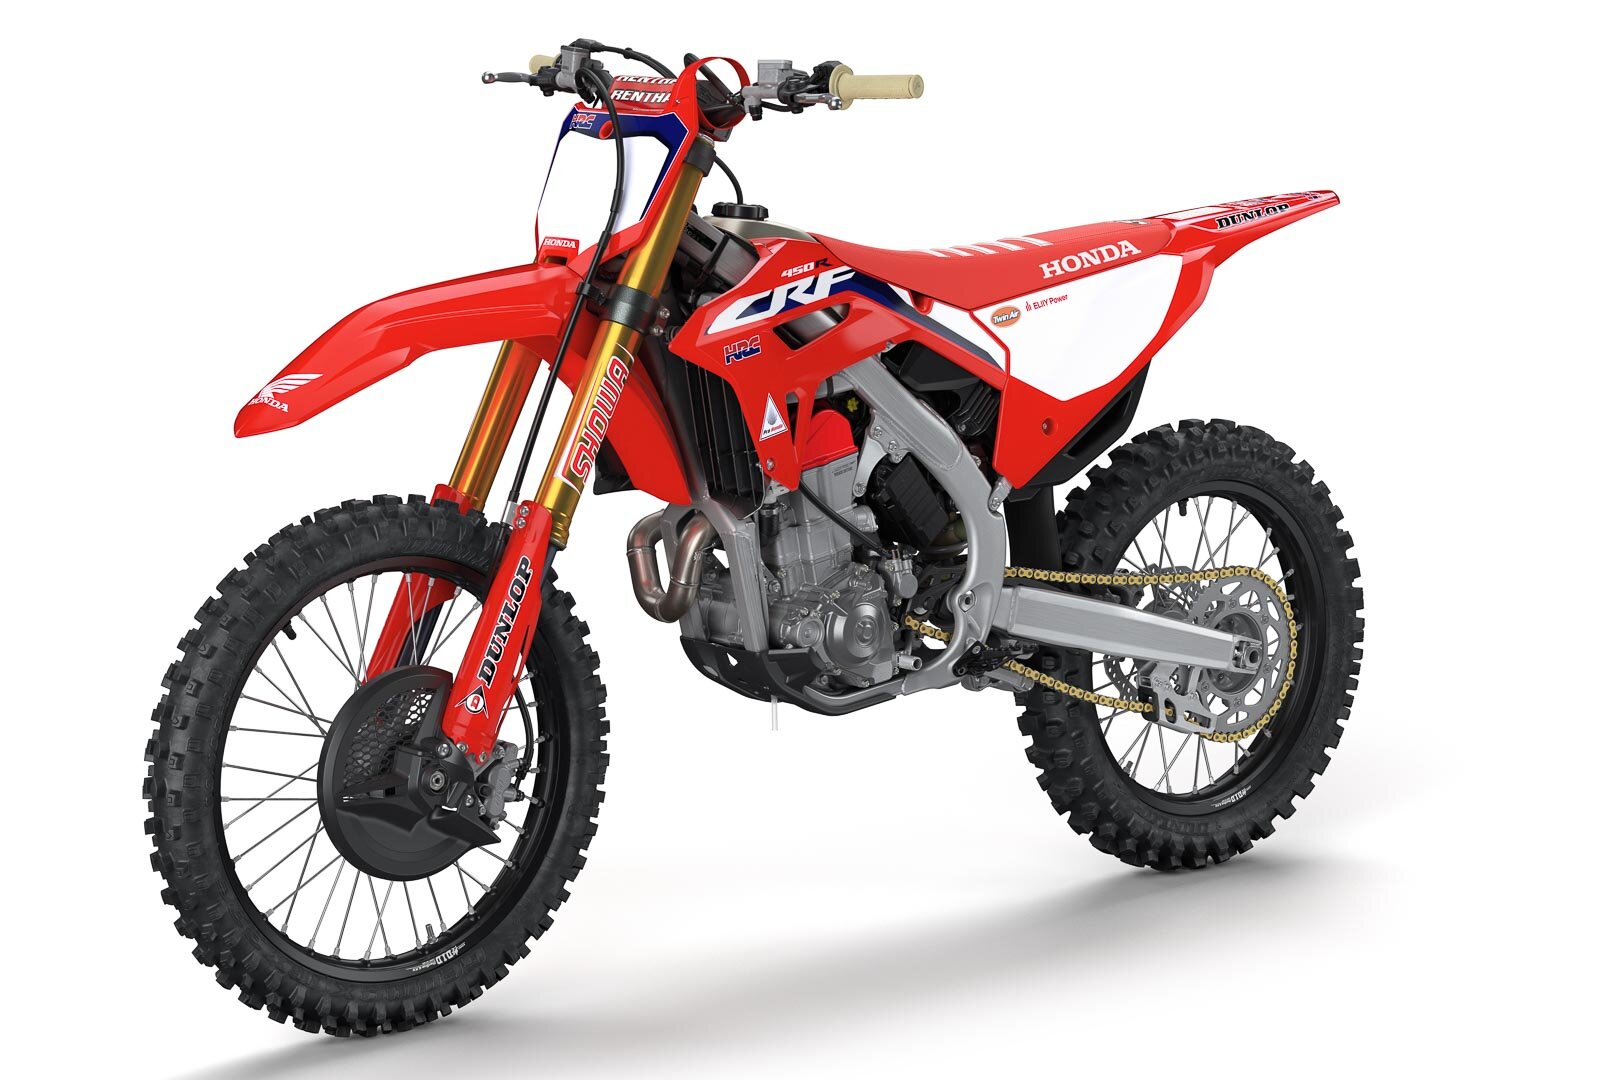 2021-Honda-CRF450RWE-First-Look-works-edition-motocross-supercross-motorcycle-2.jpg